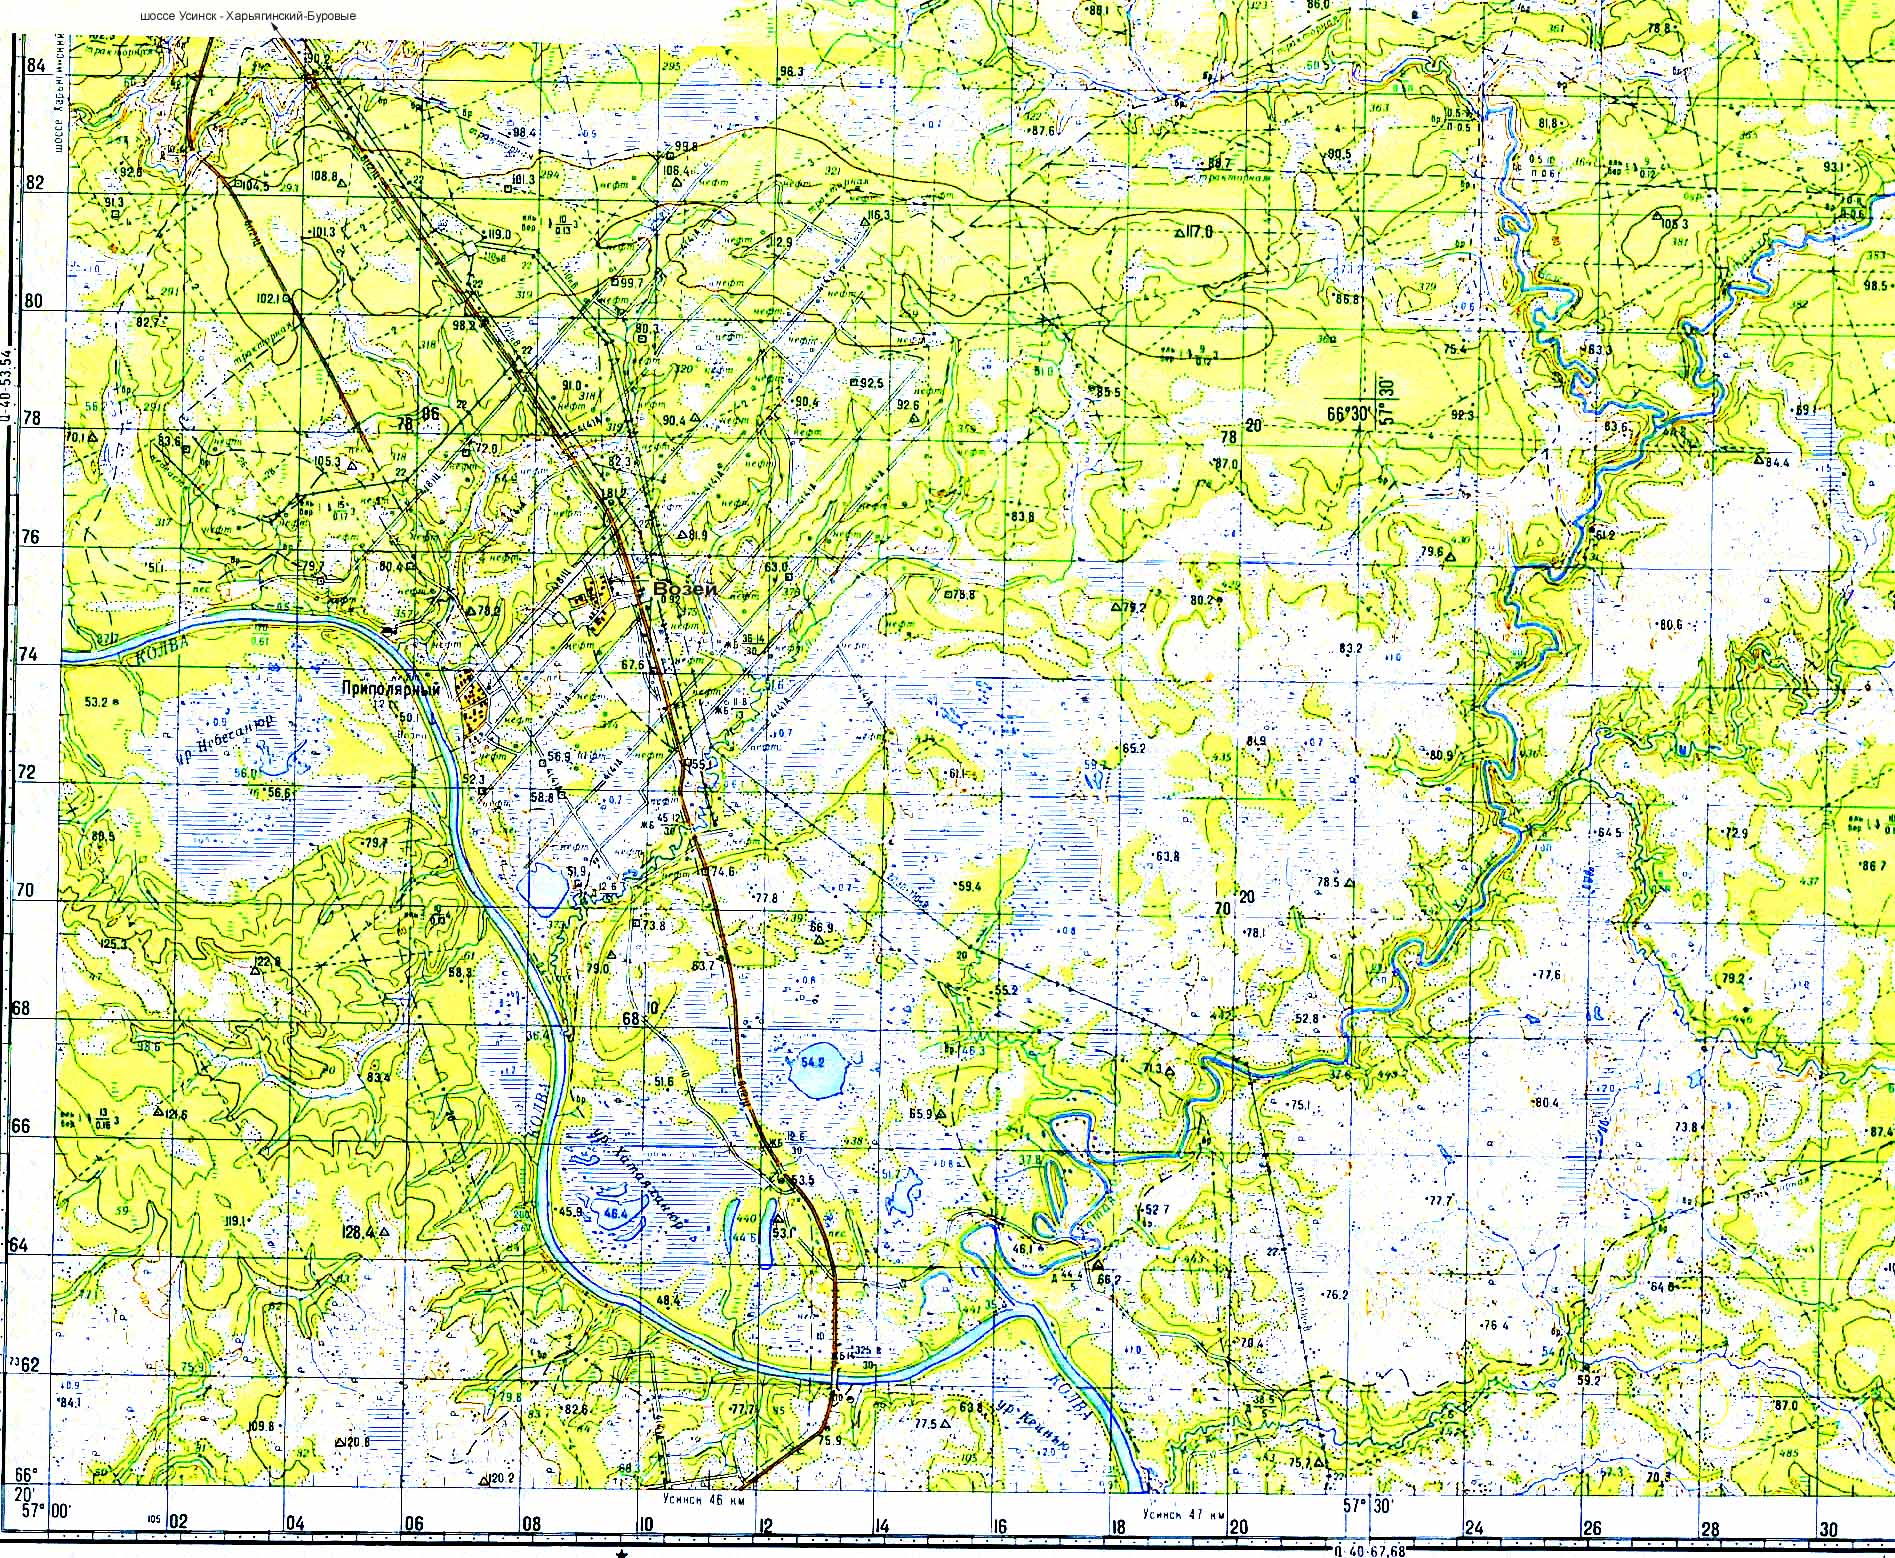 Топографическая карта Усинского района. Возейское месторождение нефти >>> 